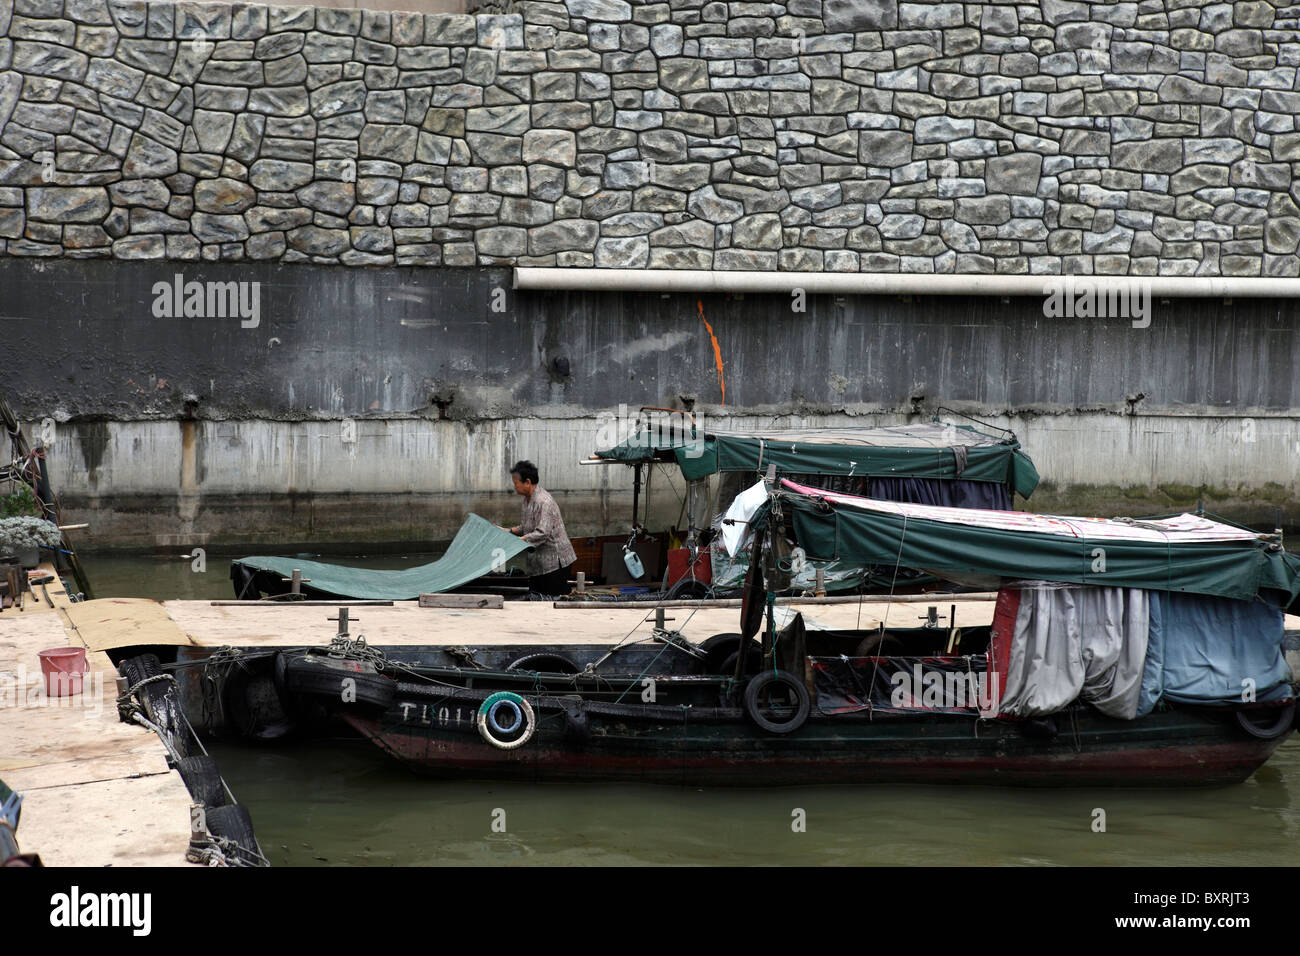 Propietario sampan tidies local donde acoplado, cerca de Pier 16, Macao Foto de stock